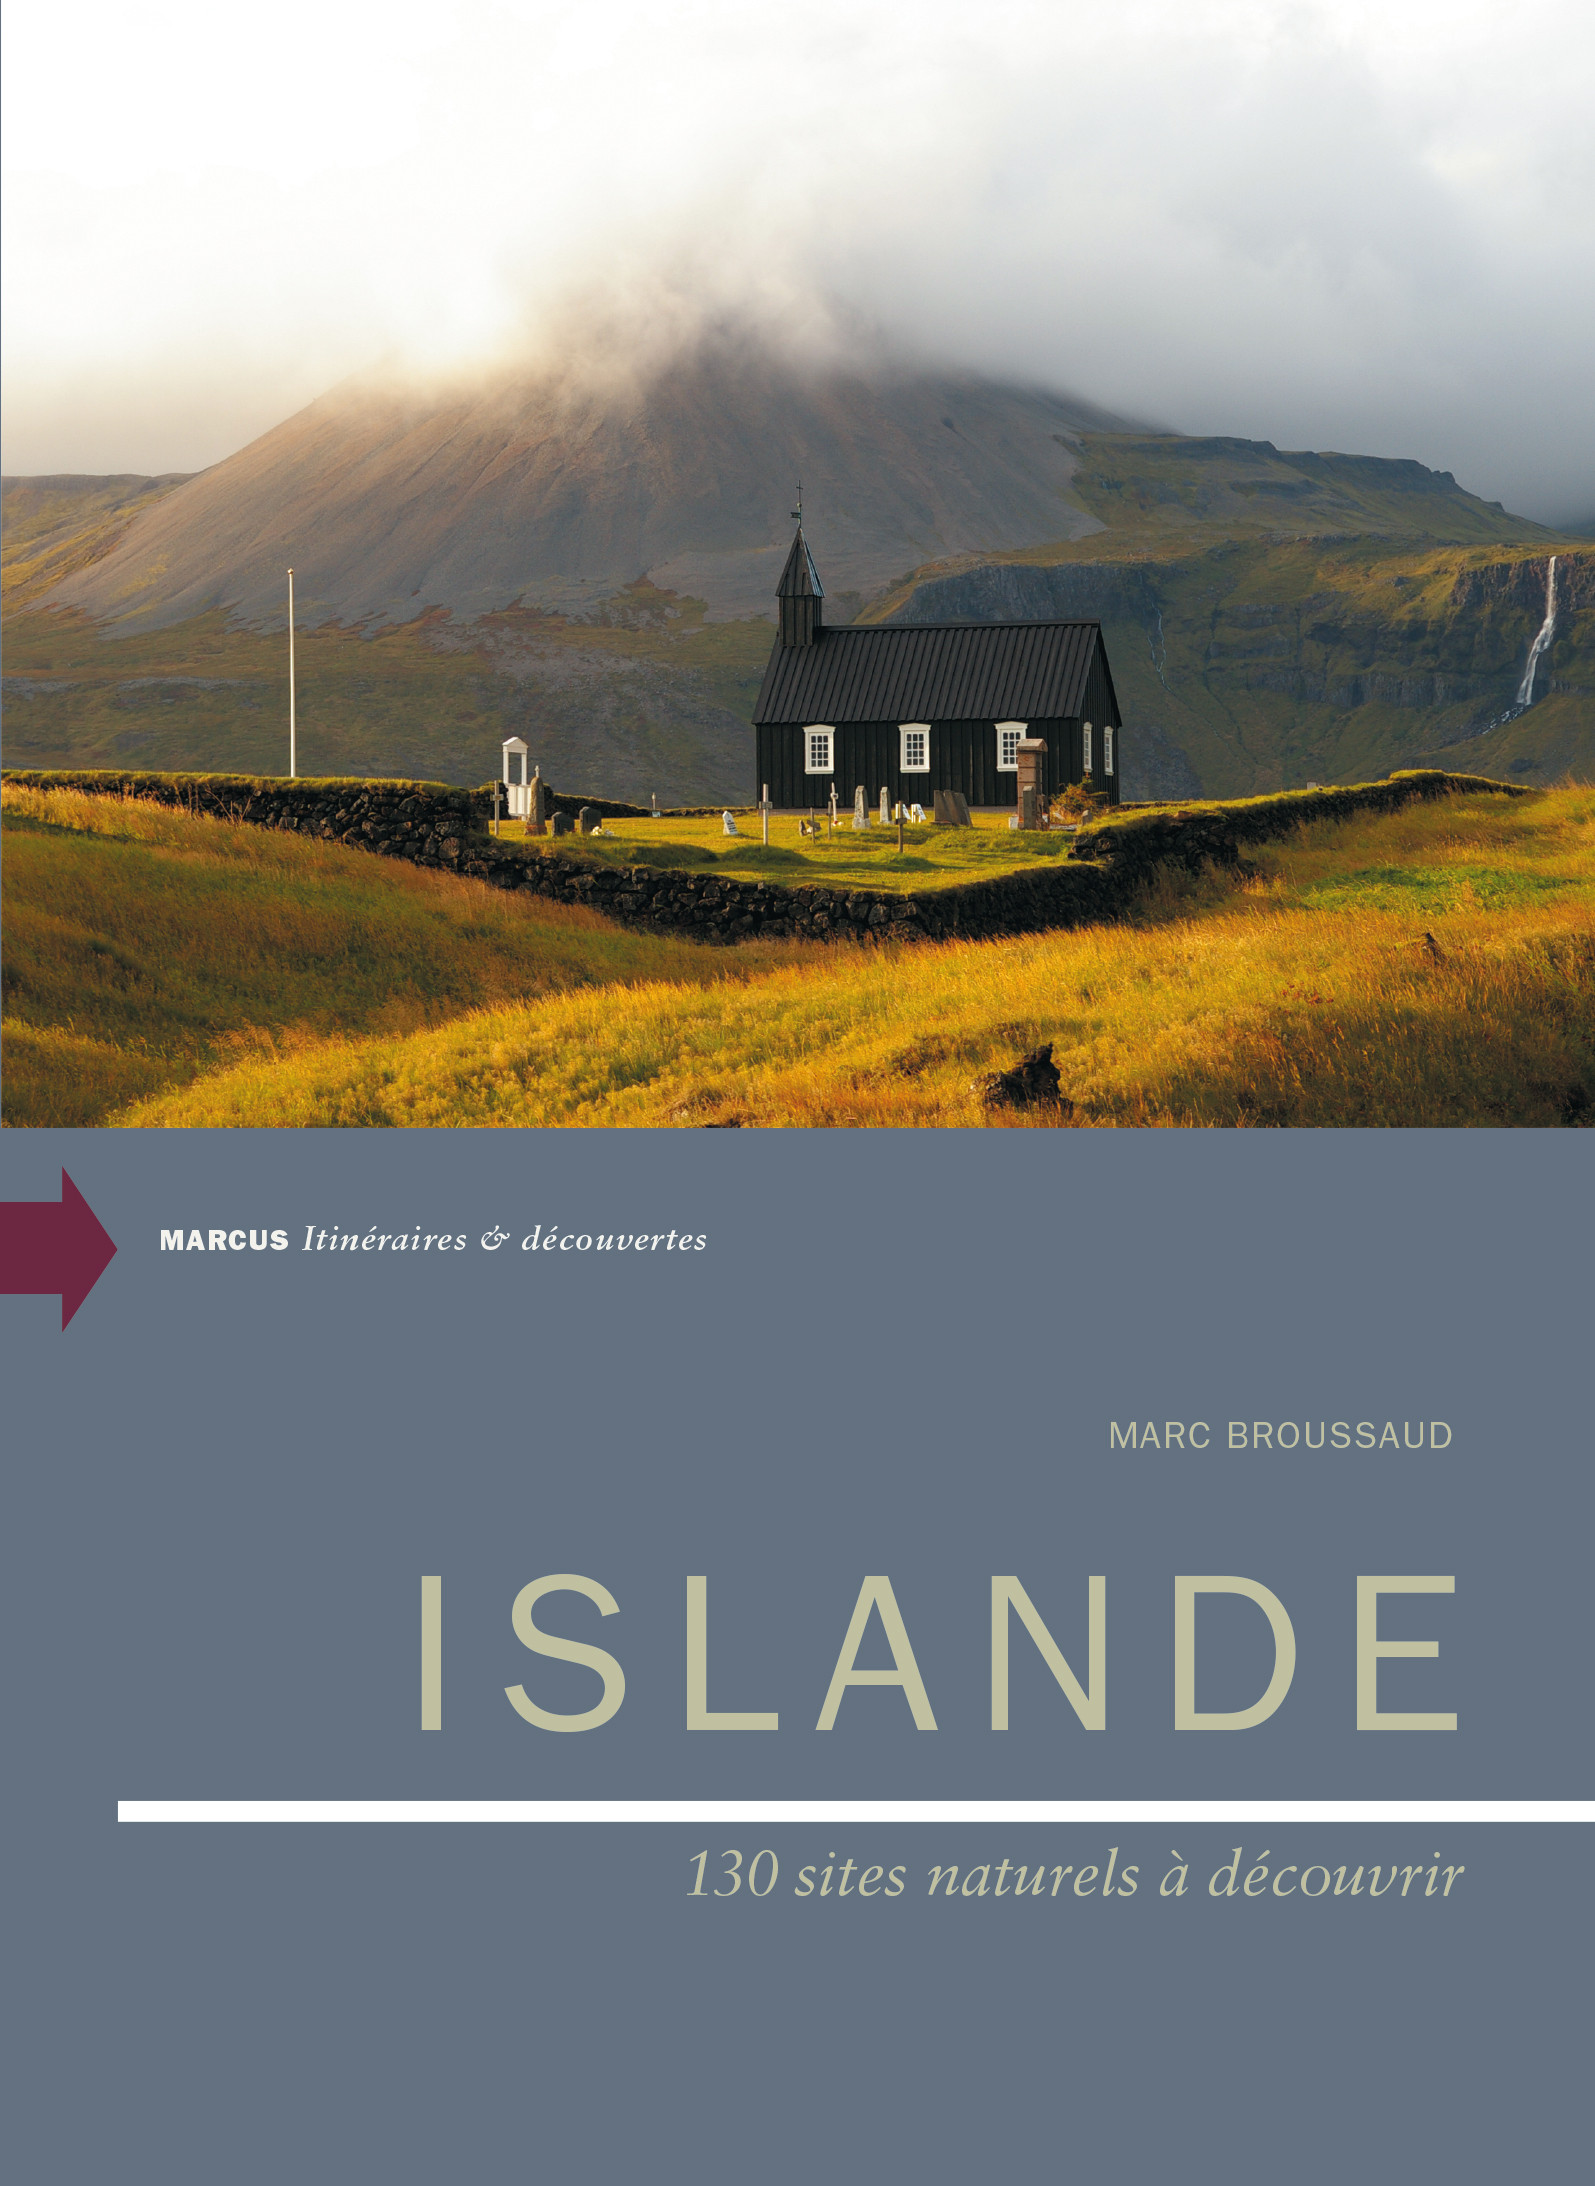 Islande, 130 sites naturels à découvrir